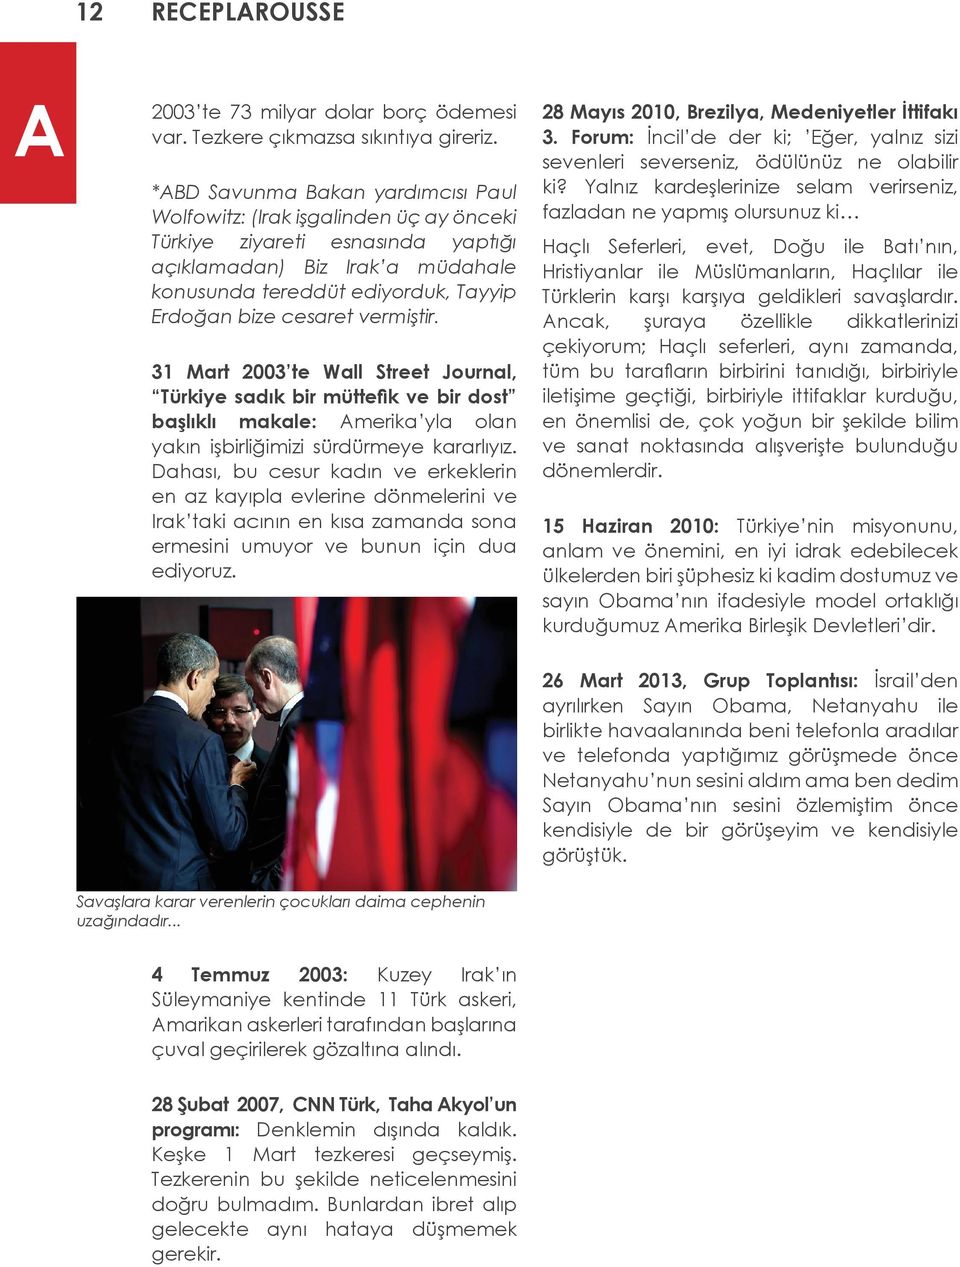 cesaret vermiştir. 31 Mart 2003 te Wall Street Journal, Türkiye sadık bir müttefik ve bir dost başlıklı makale: Amerika yla olan yakın işbirliğimizi sürdürmeye kararlıyız.